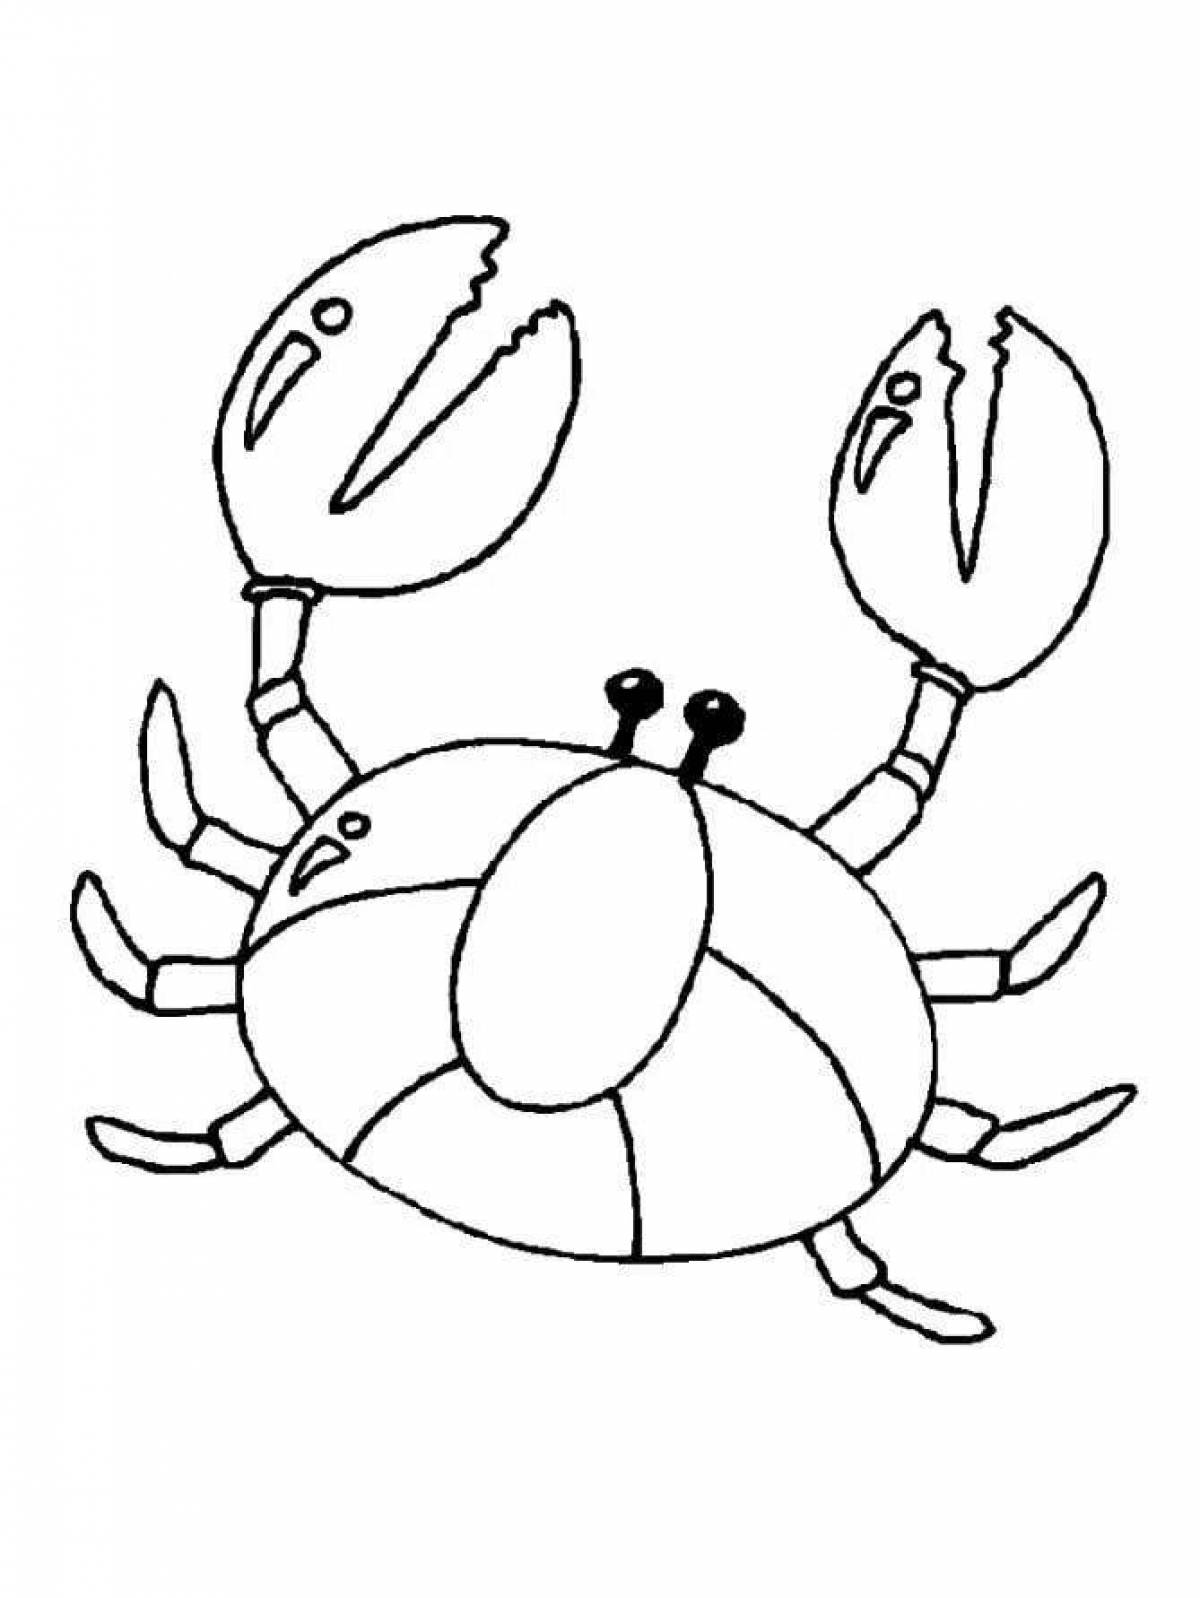 Magic crab coloring book for kids